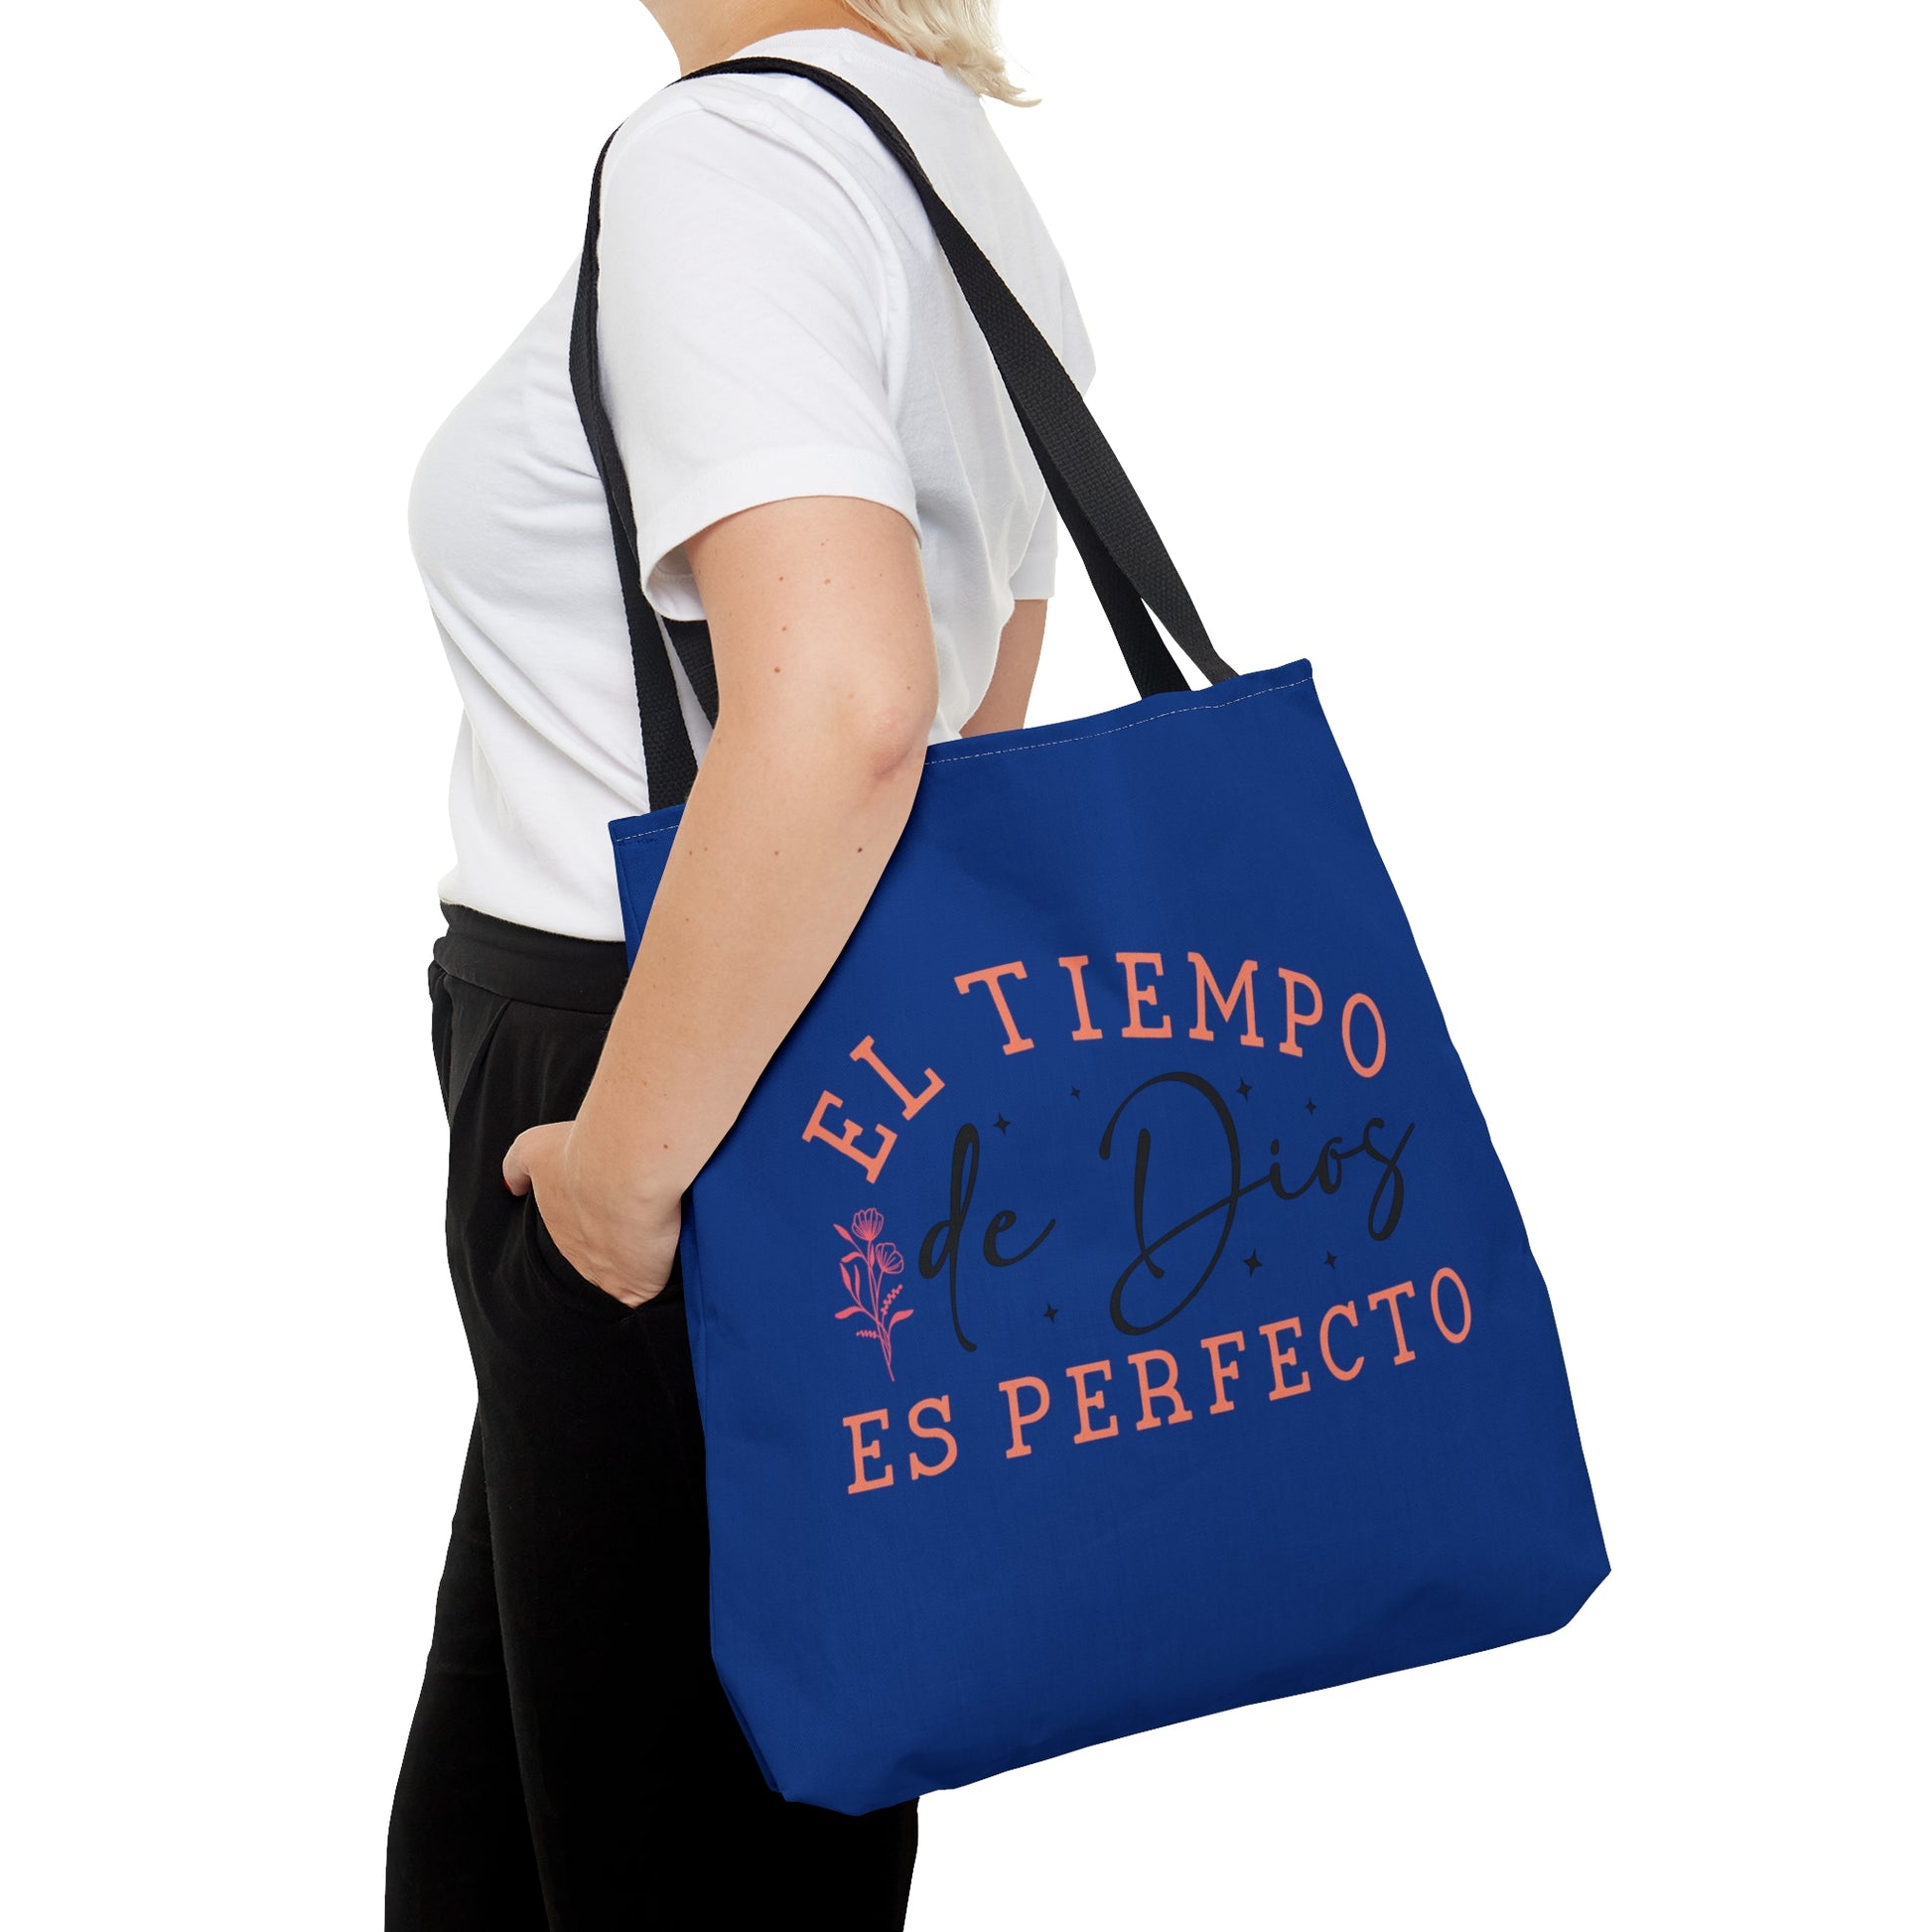 EL TIEMPO DE DIOS ES PERFECTO Christian SPANISH Tote Bag Printify